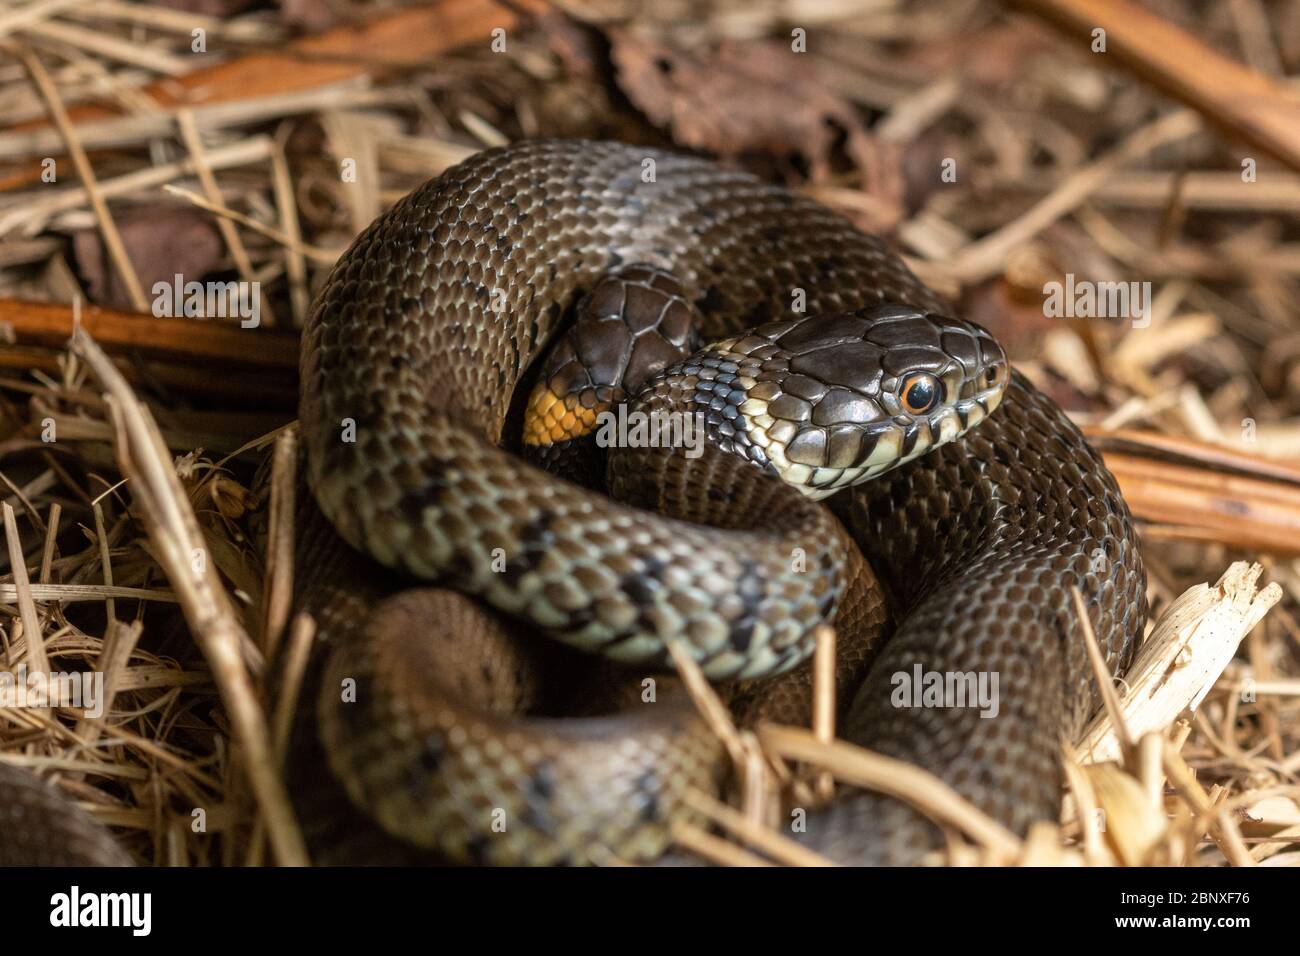 Deux jeunes serpents (Natrix natrix Helvetica) se sont rassemblés à Surrey, au Royaume-Uni Banque D'Images